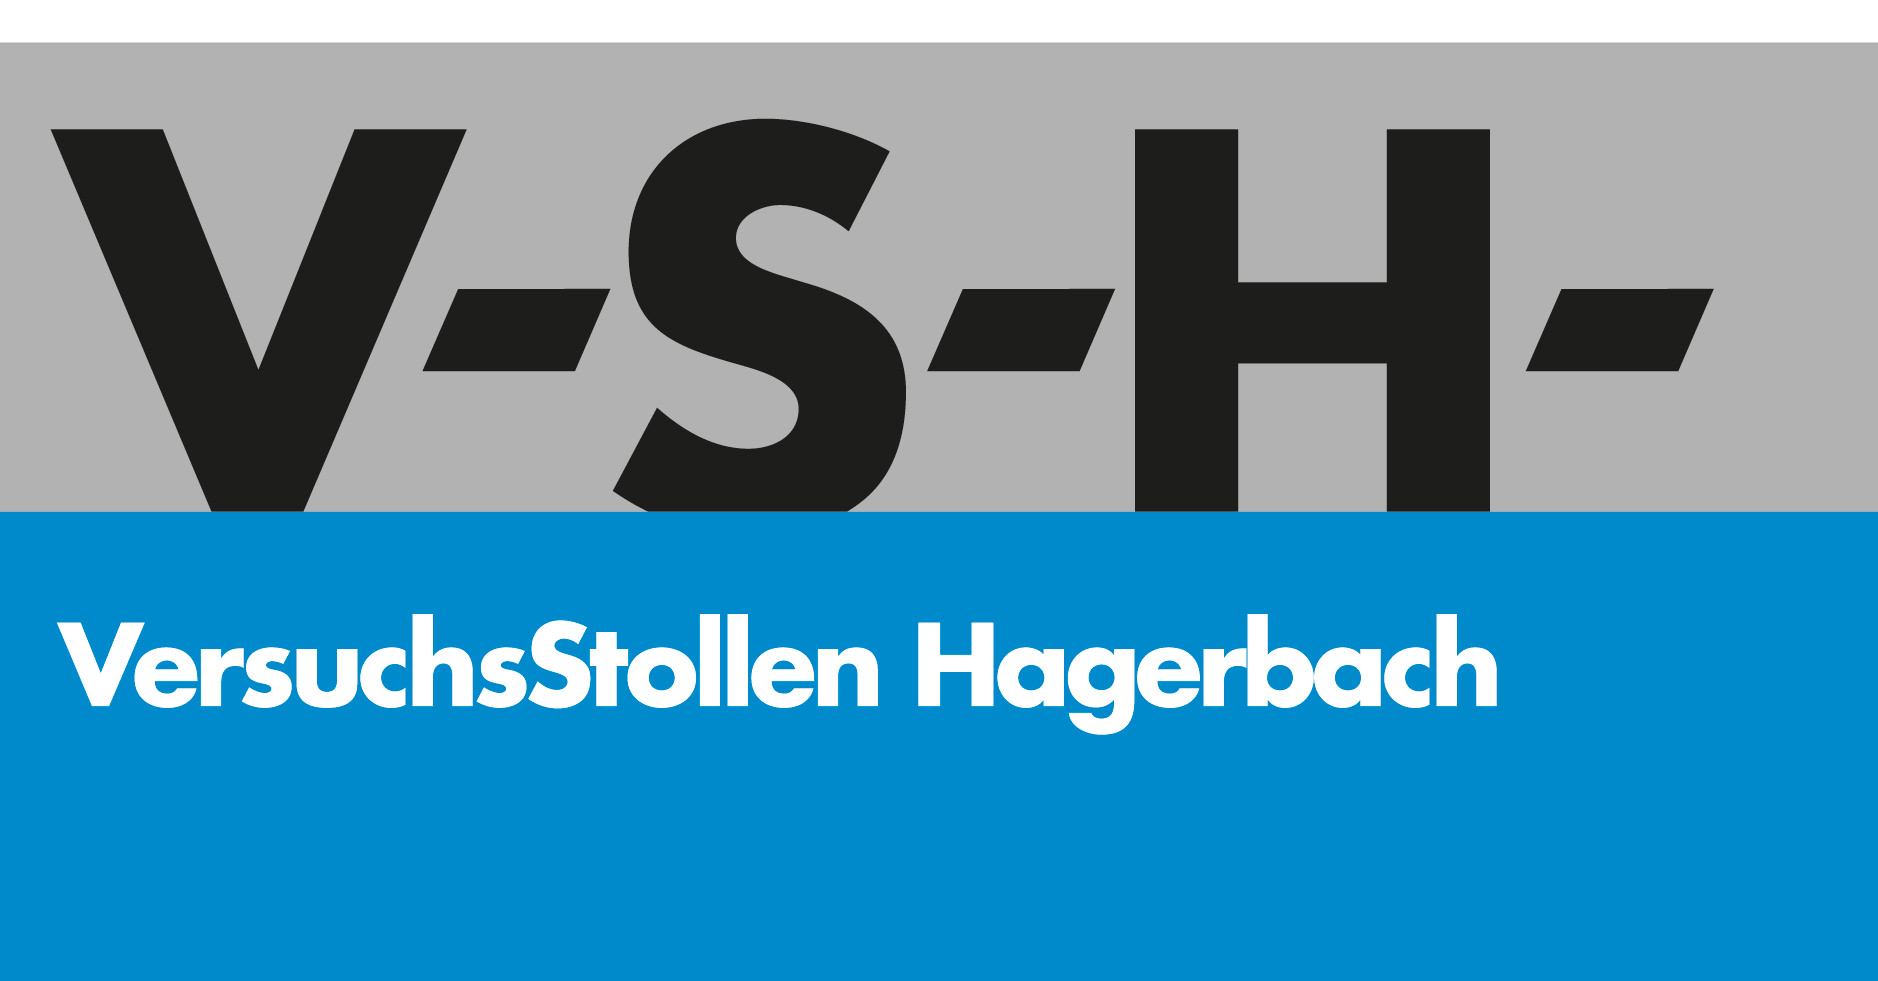 VersuchsStollen Hagerbach AG